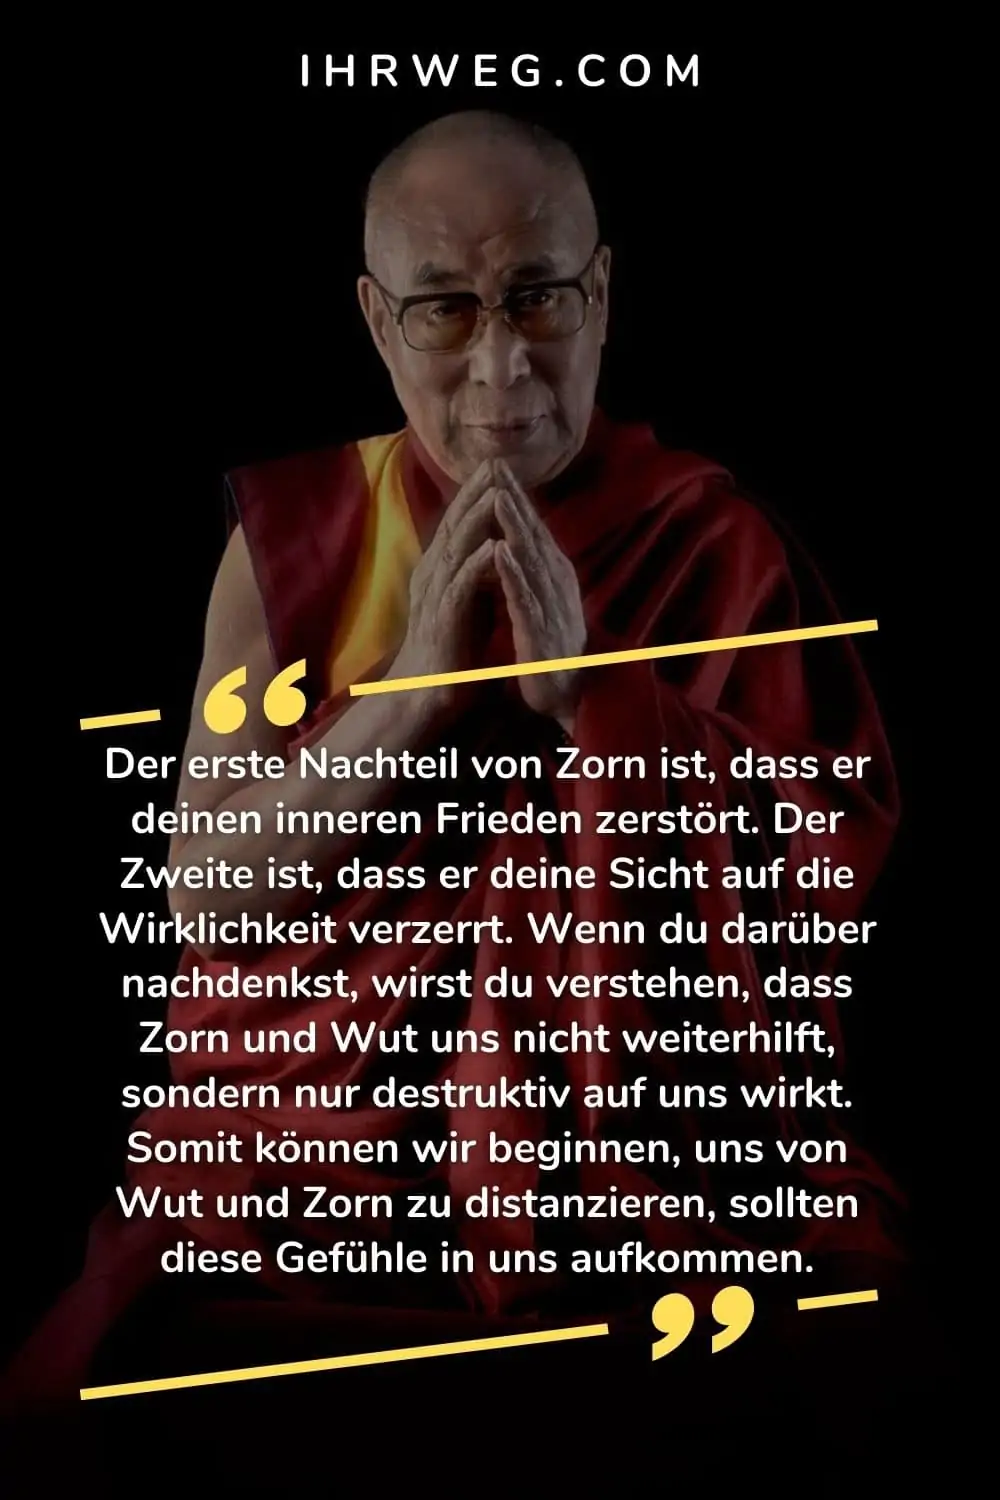 dalai lama zitate